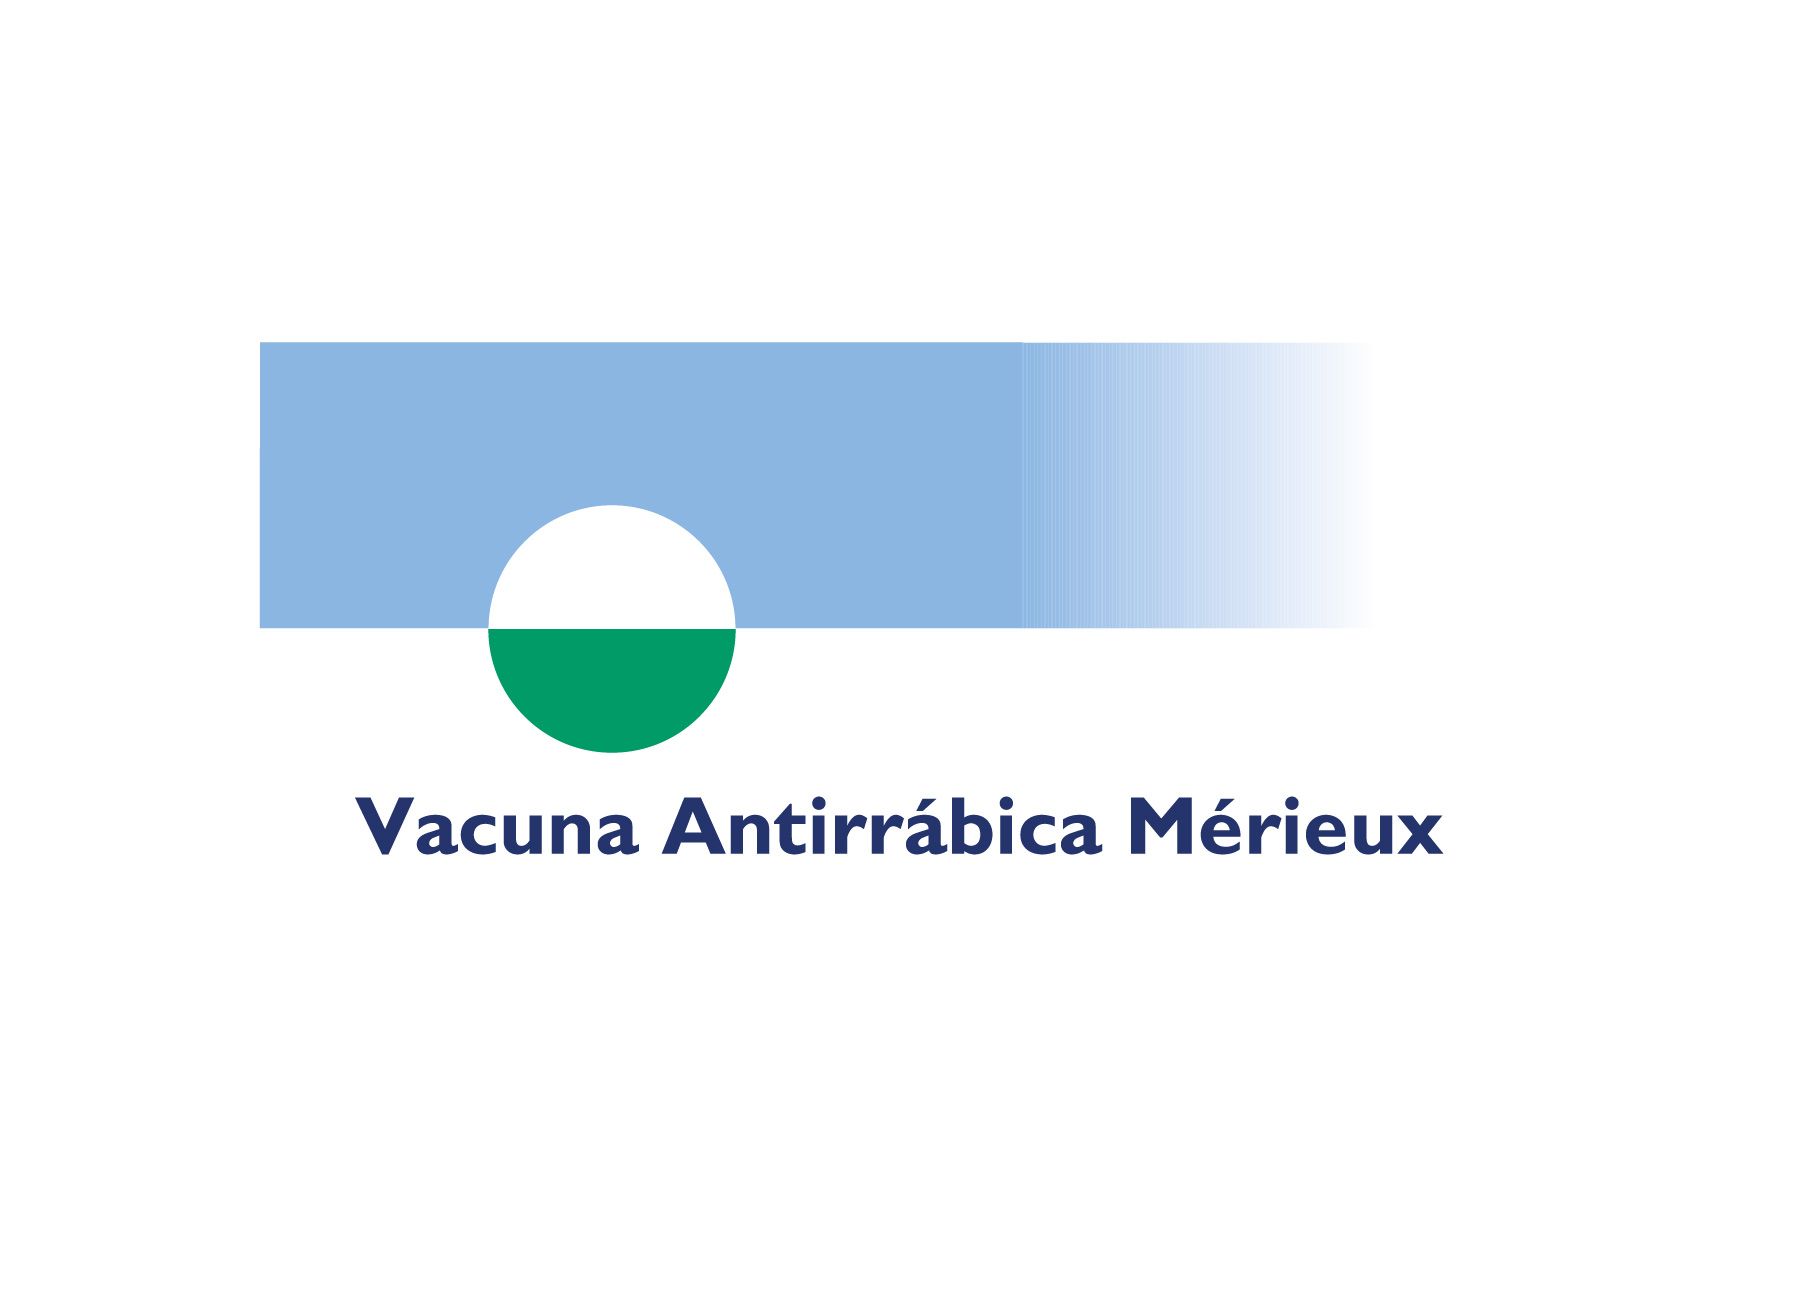 Vacuna Antirrábica Merieux